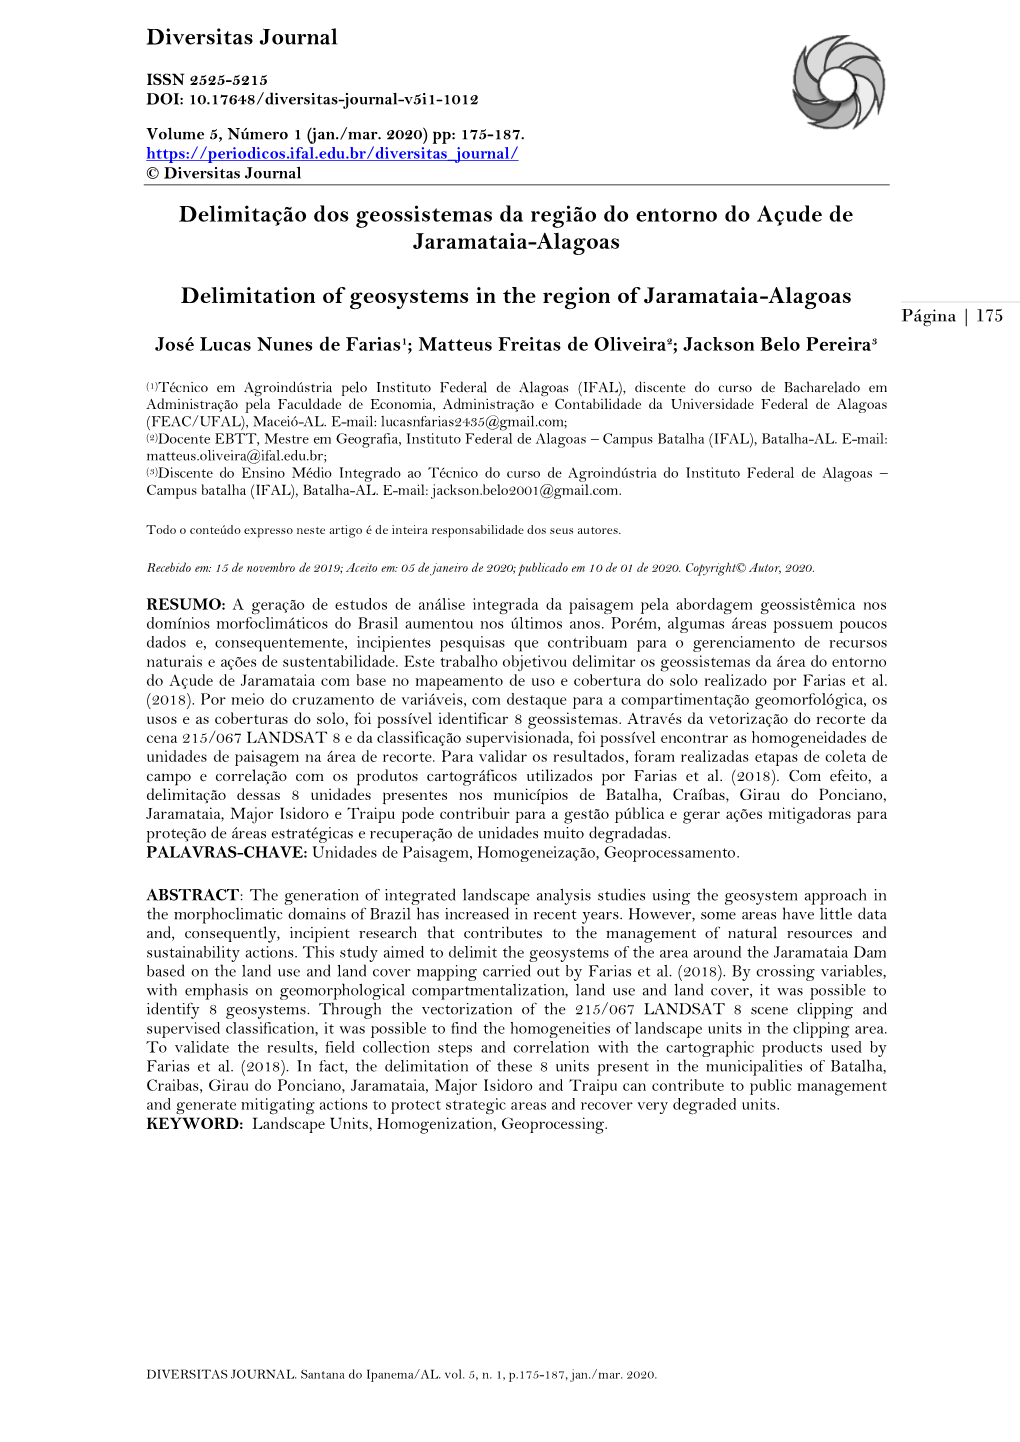 Diversitas Journal Delimitação Dos Geossistemas Da Região Do Entorno